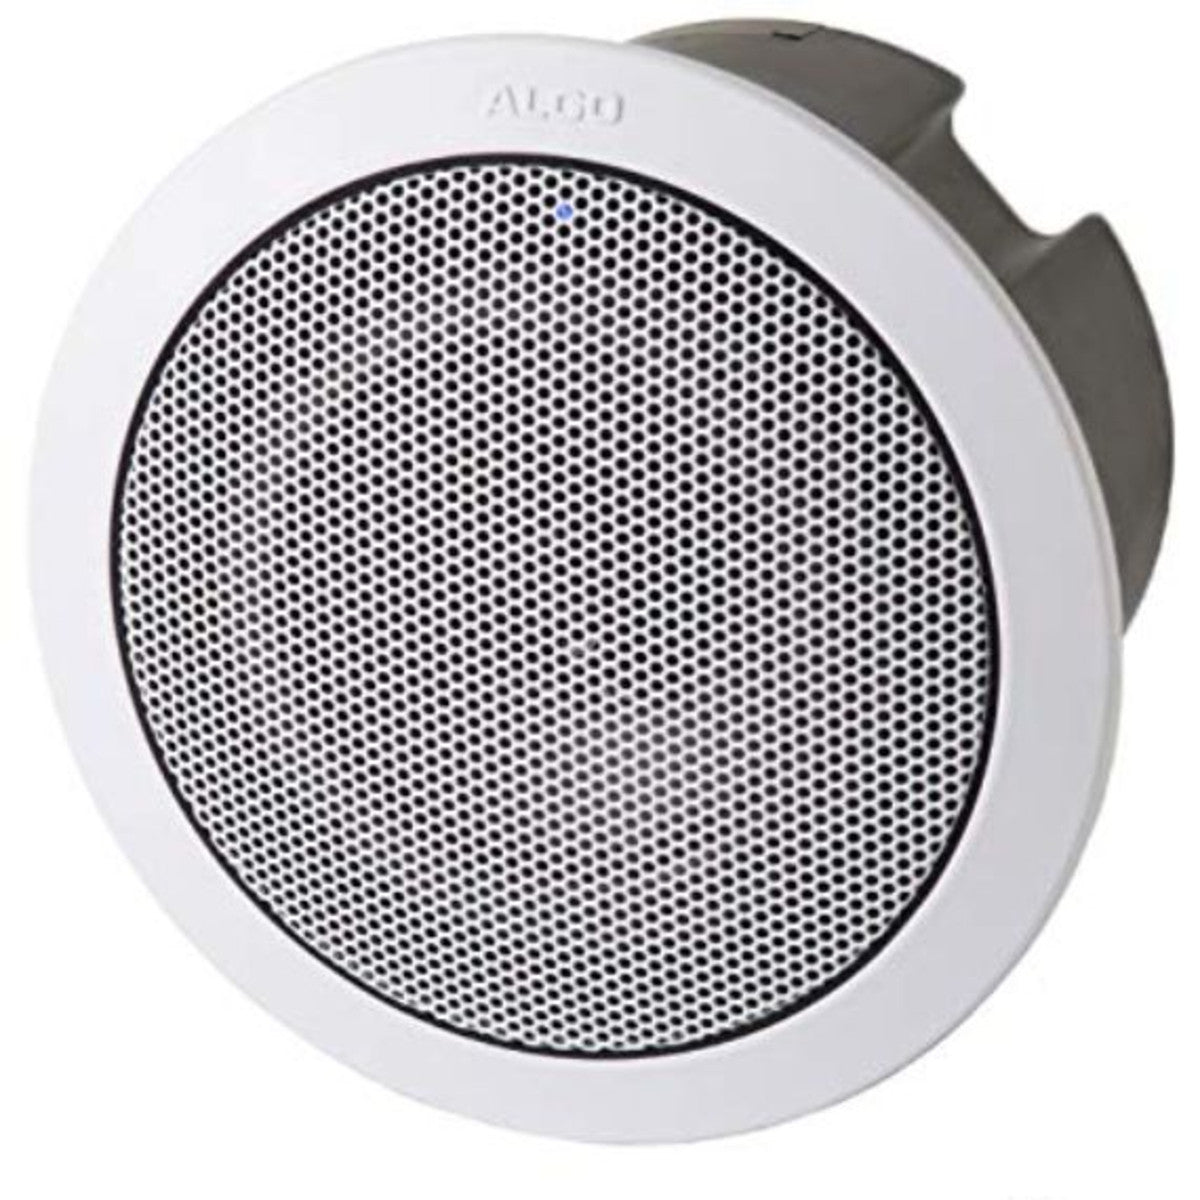 Algo 8188 IP Ceiling Speaker (White) | New